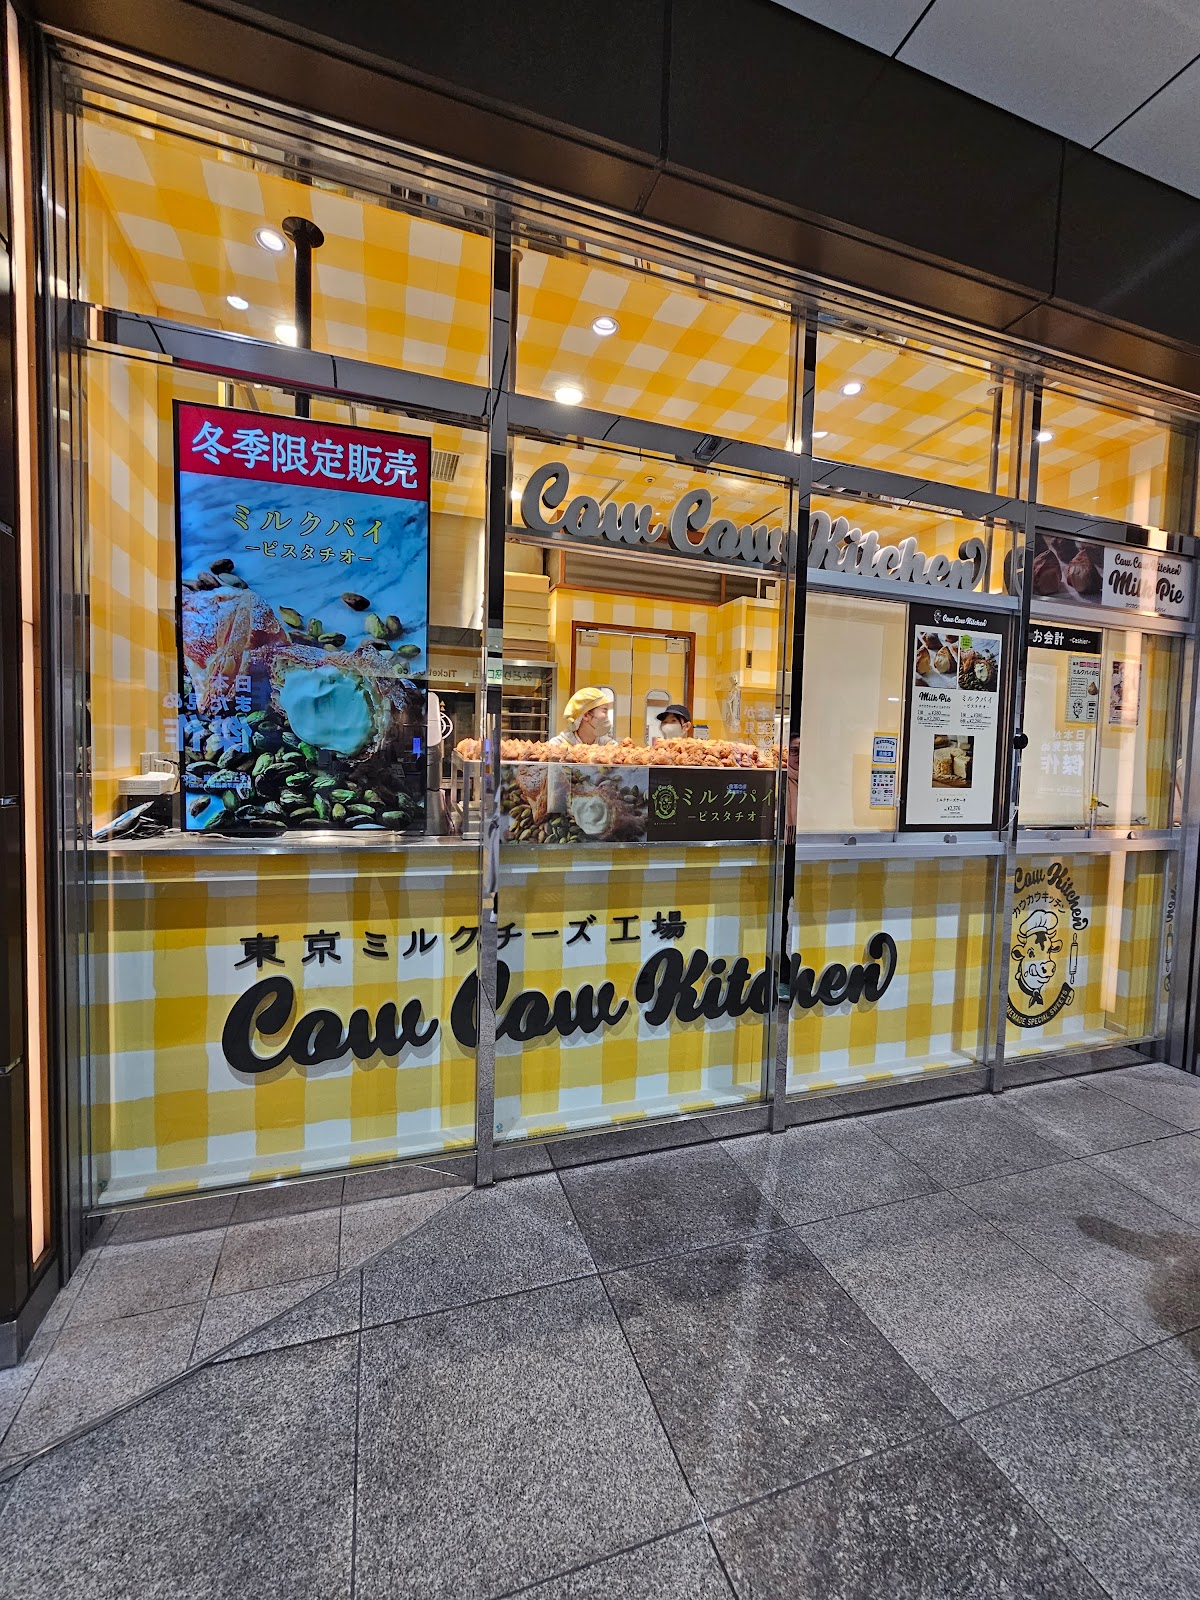 東京ミルクチーズ工場 Cow Cow Kitchen アトレ秋葉原1店の風景